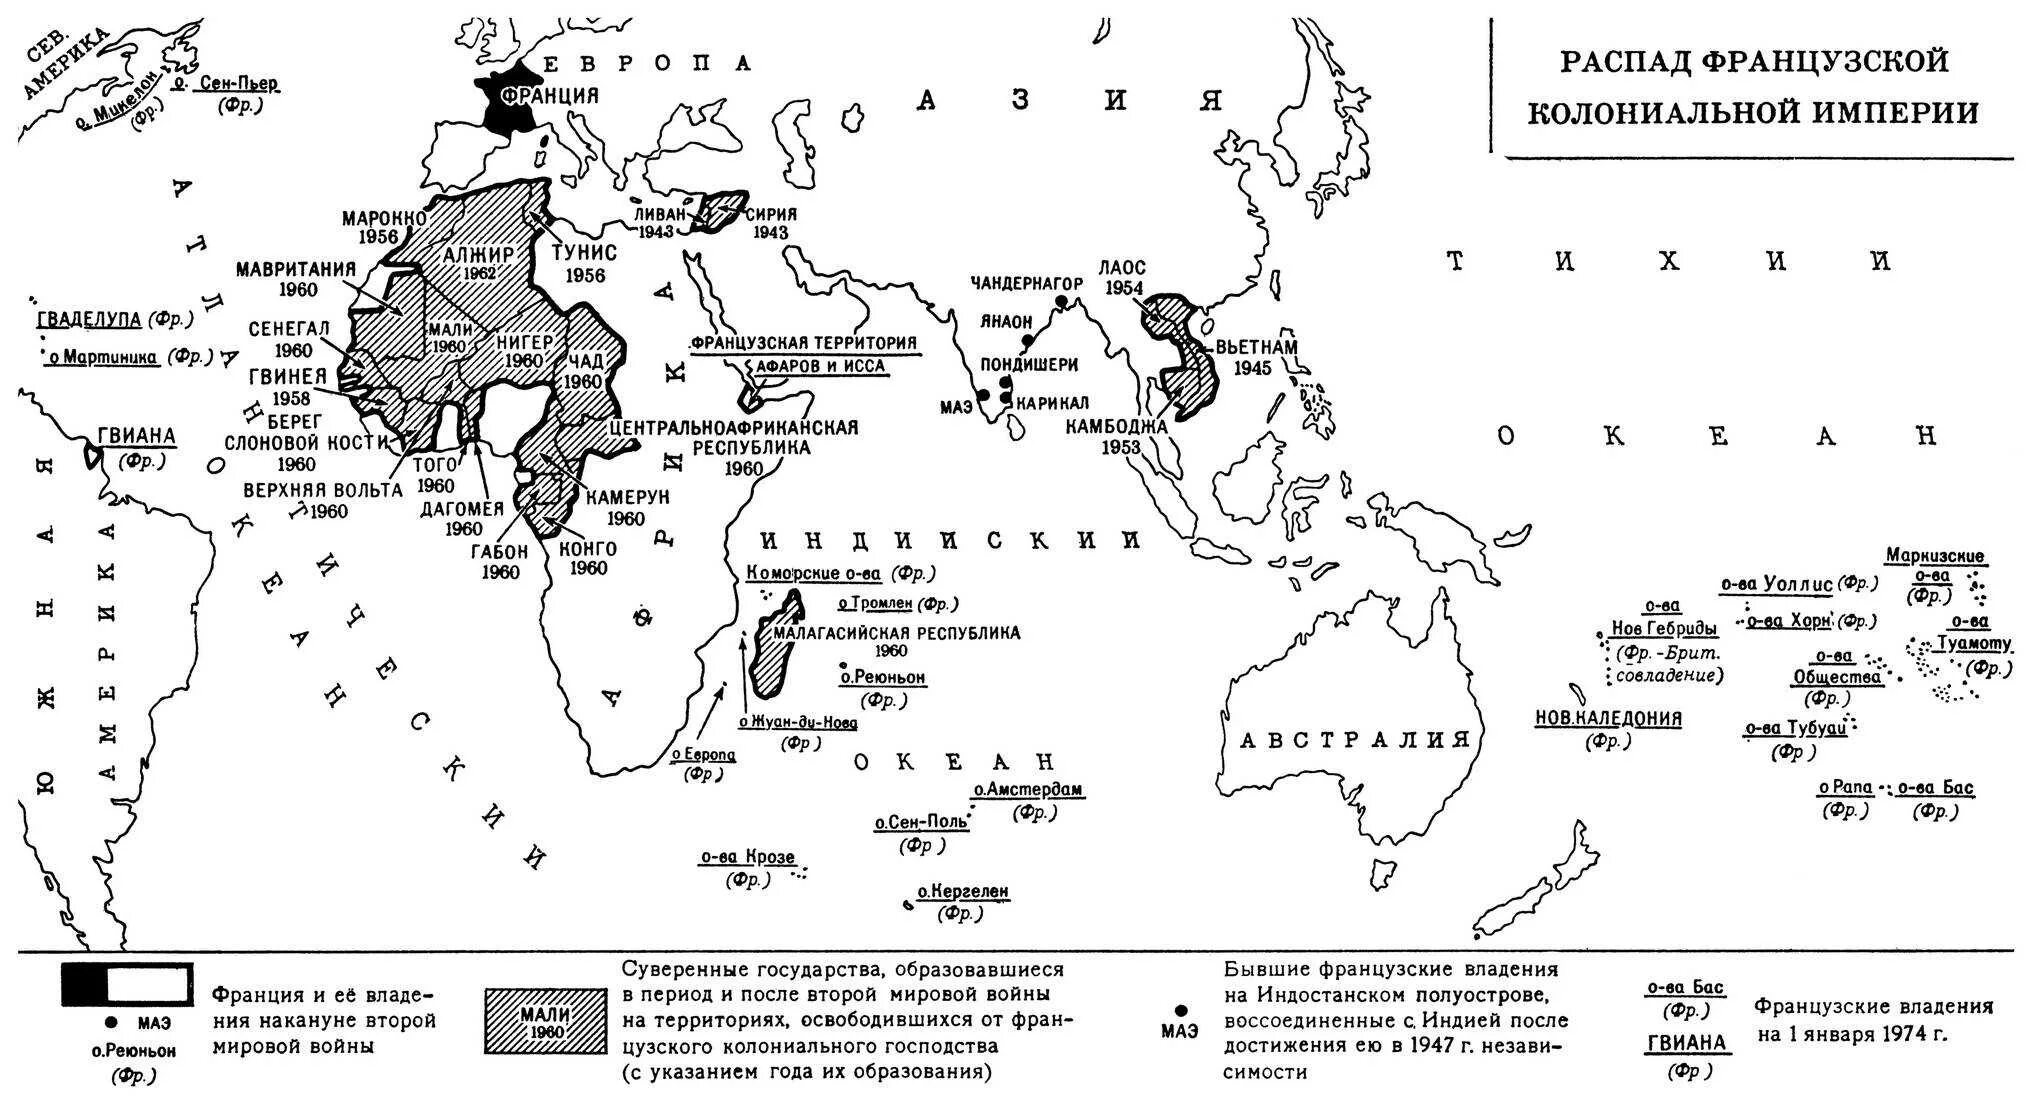 Распад франции. Колонии Франции карта 20 век. Карта Франции 1914 с колониями. Колонии Франции на карте. Карта колоний Франции 19 век.